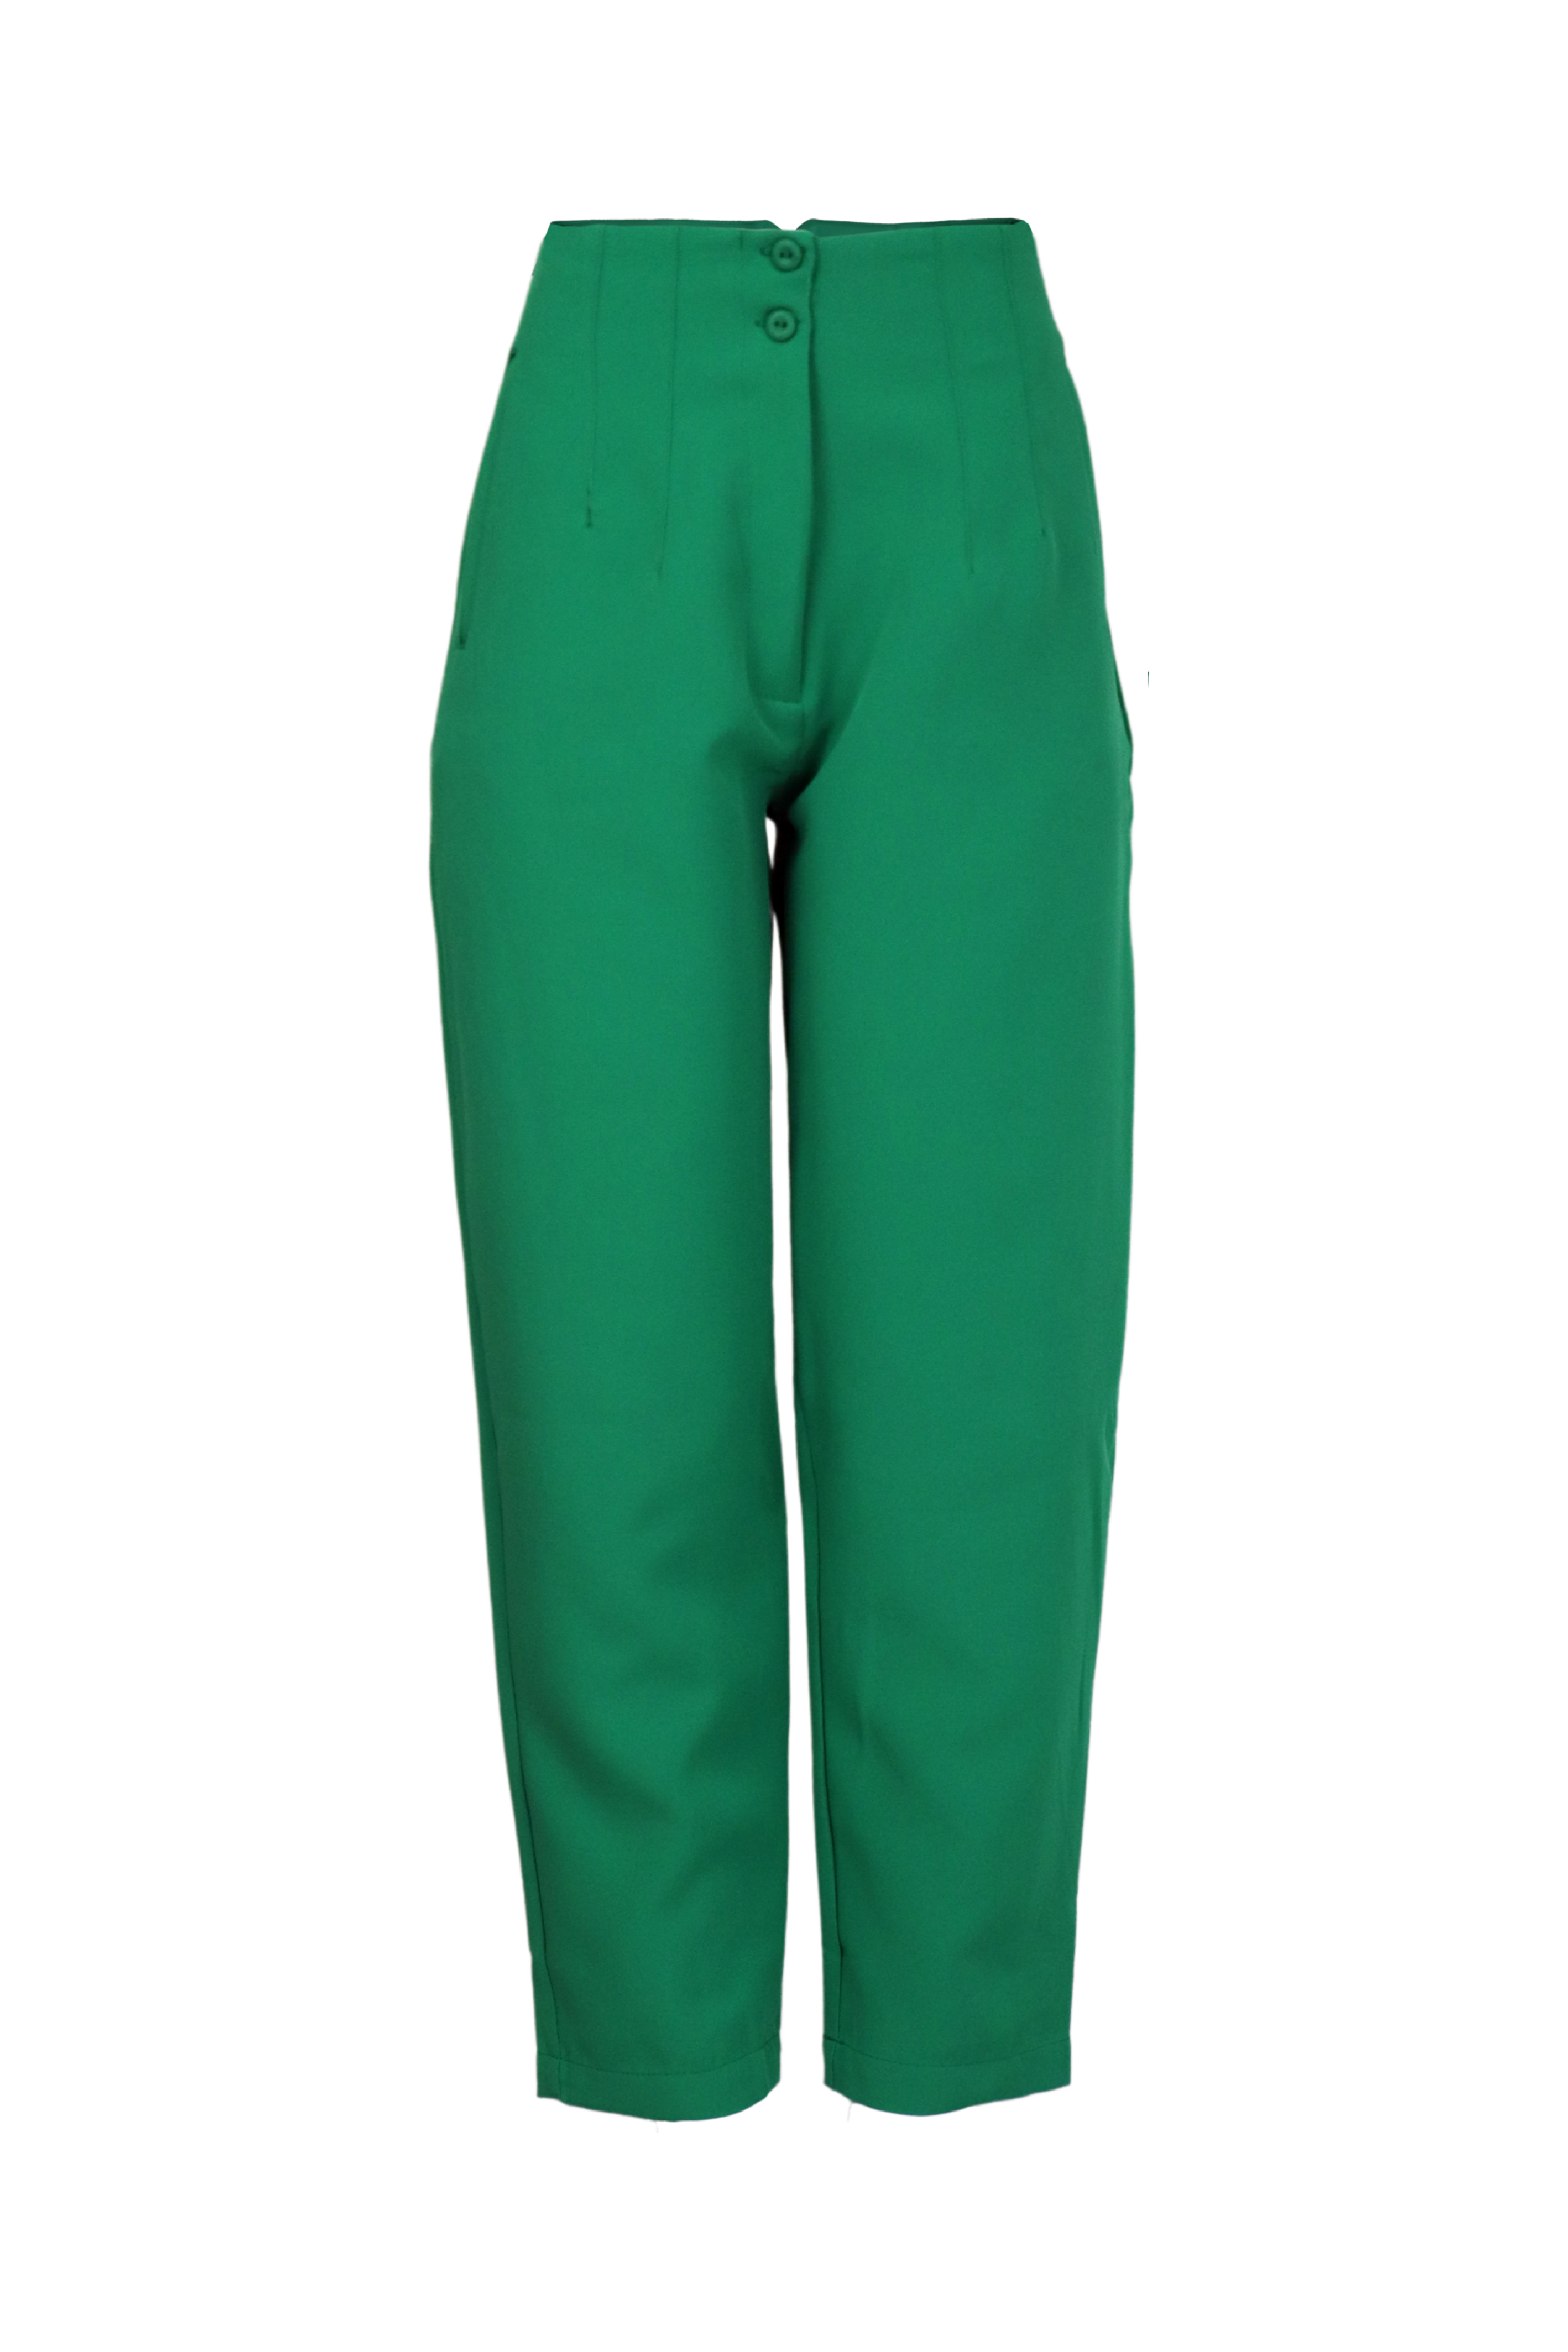 Pantalón verde tipo baggy